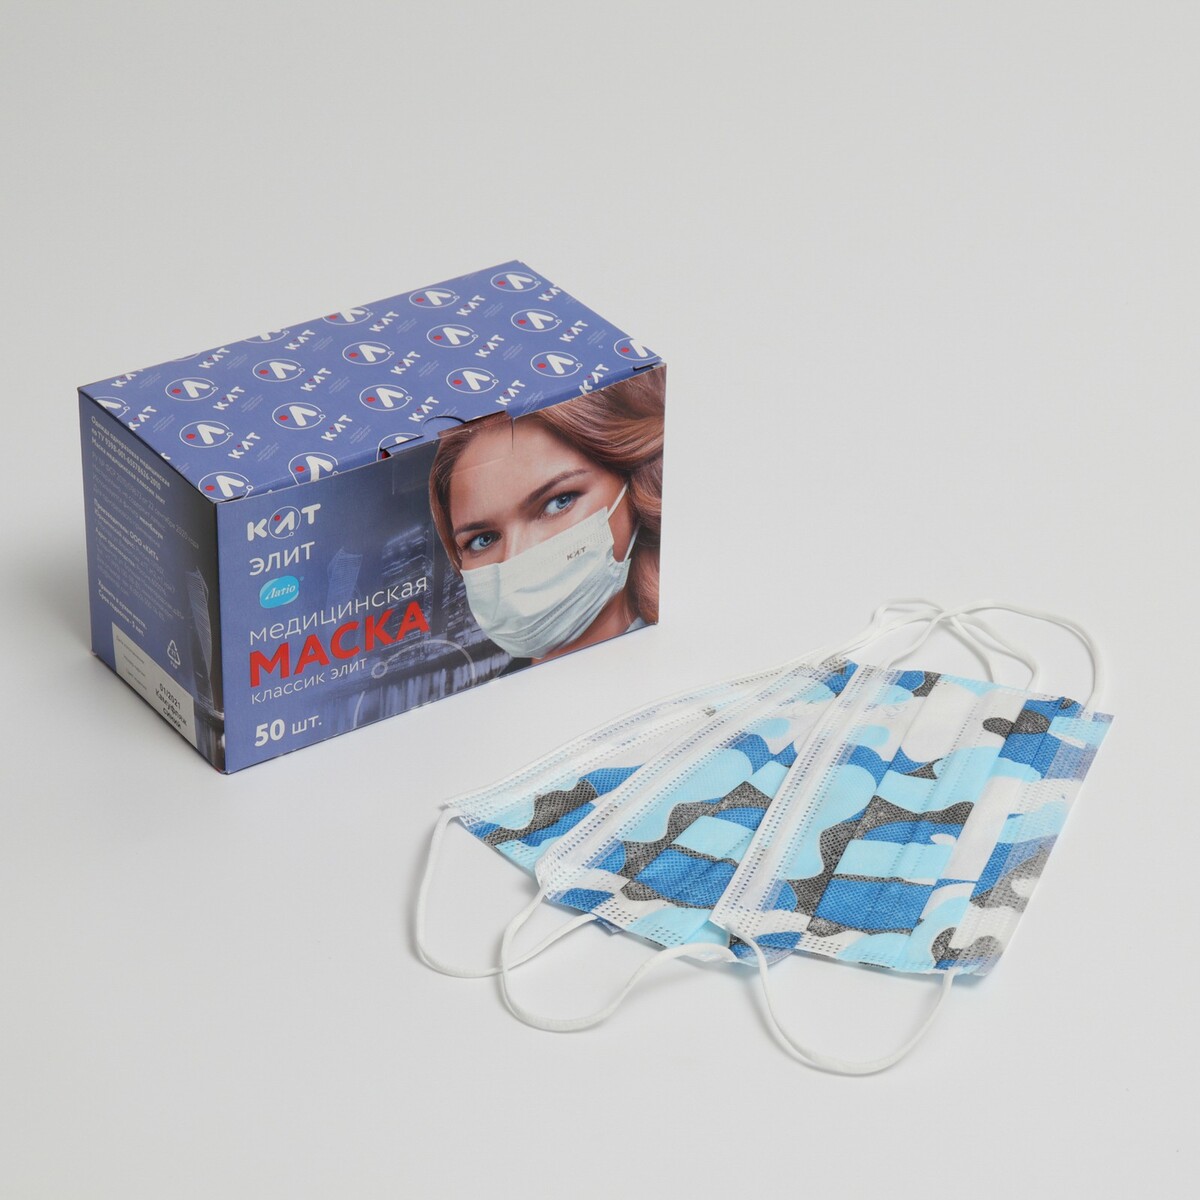 Маска медицинская latio синий камуфляж, 2 фиксатора формы, 50 шт картонный блок маска медицинская классик